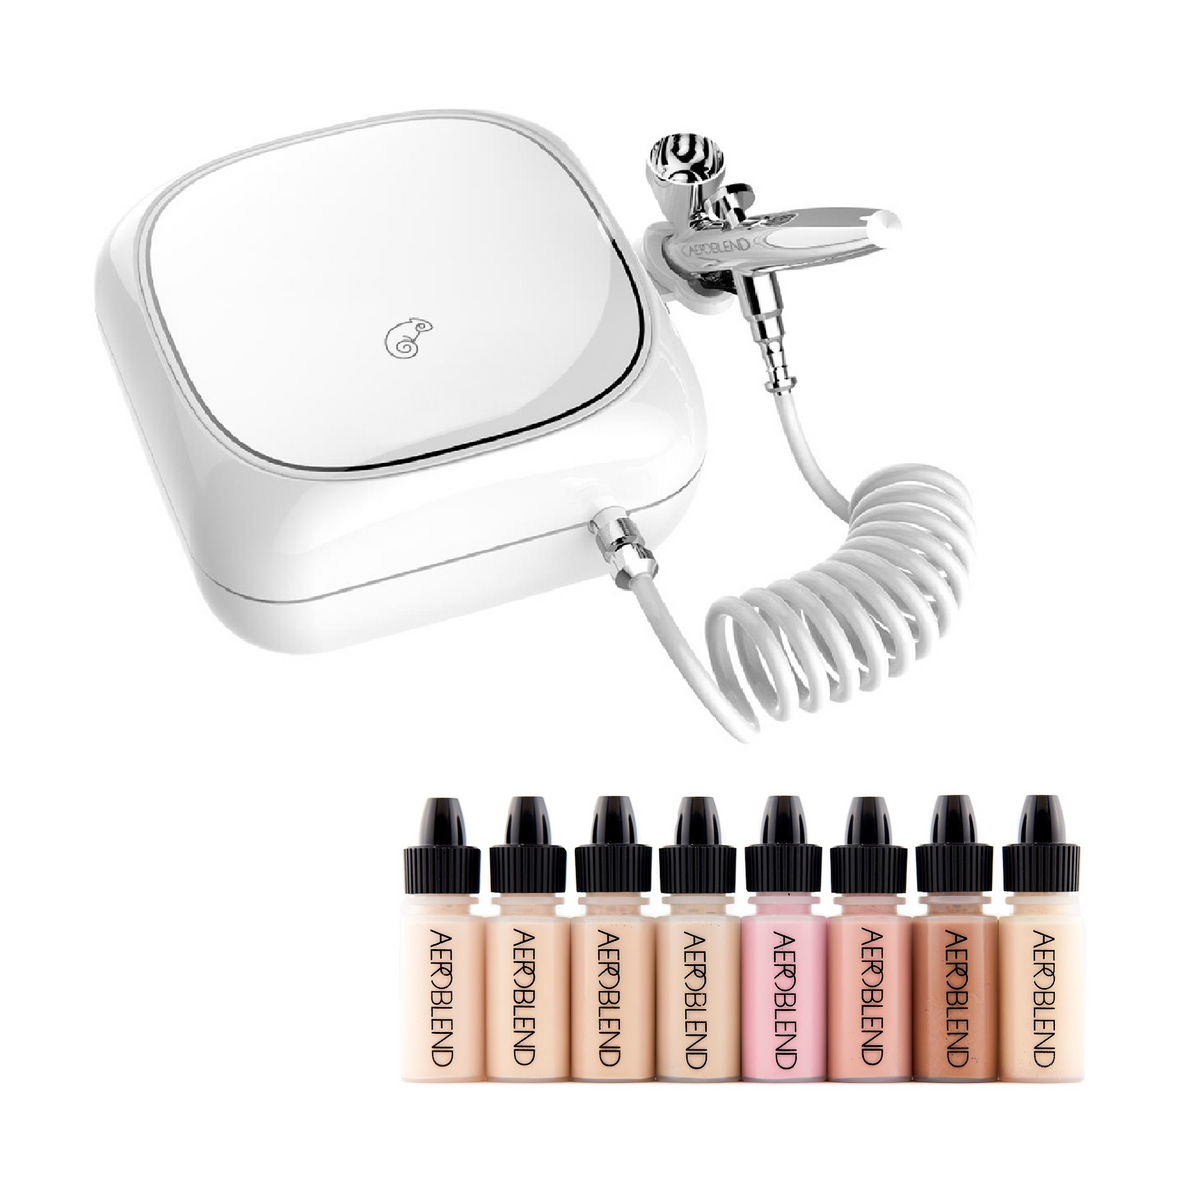 Aeroblend Airbrush Personal Makeup Starter Kit